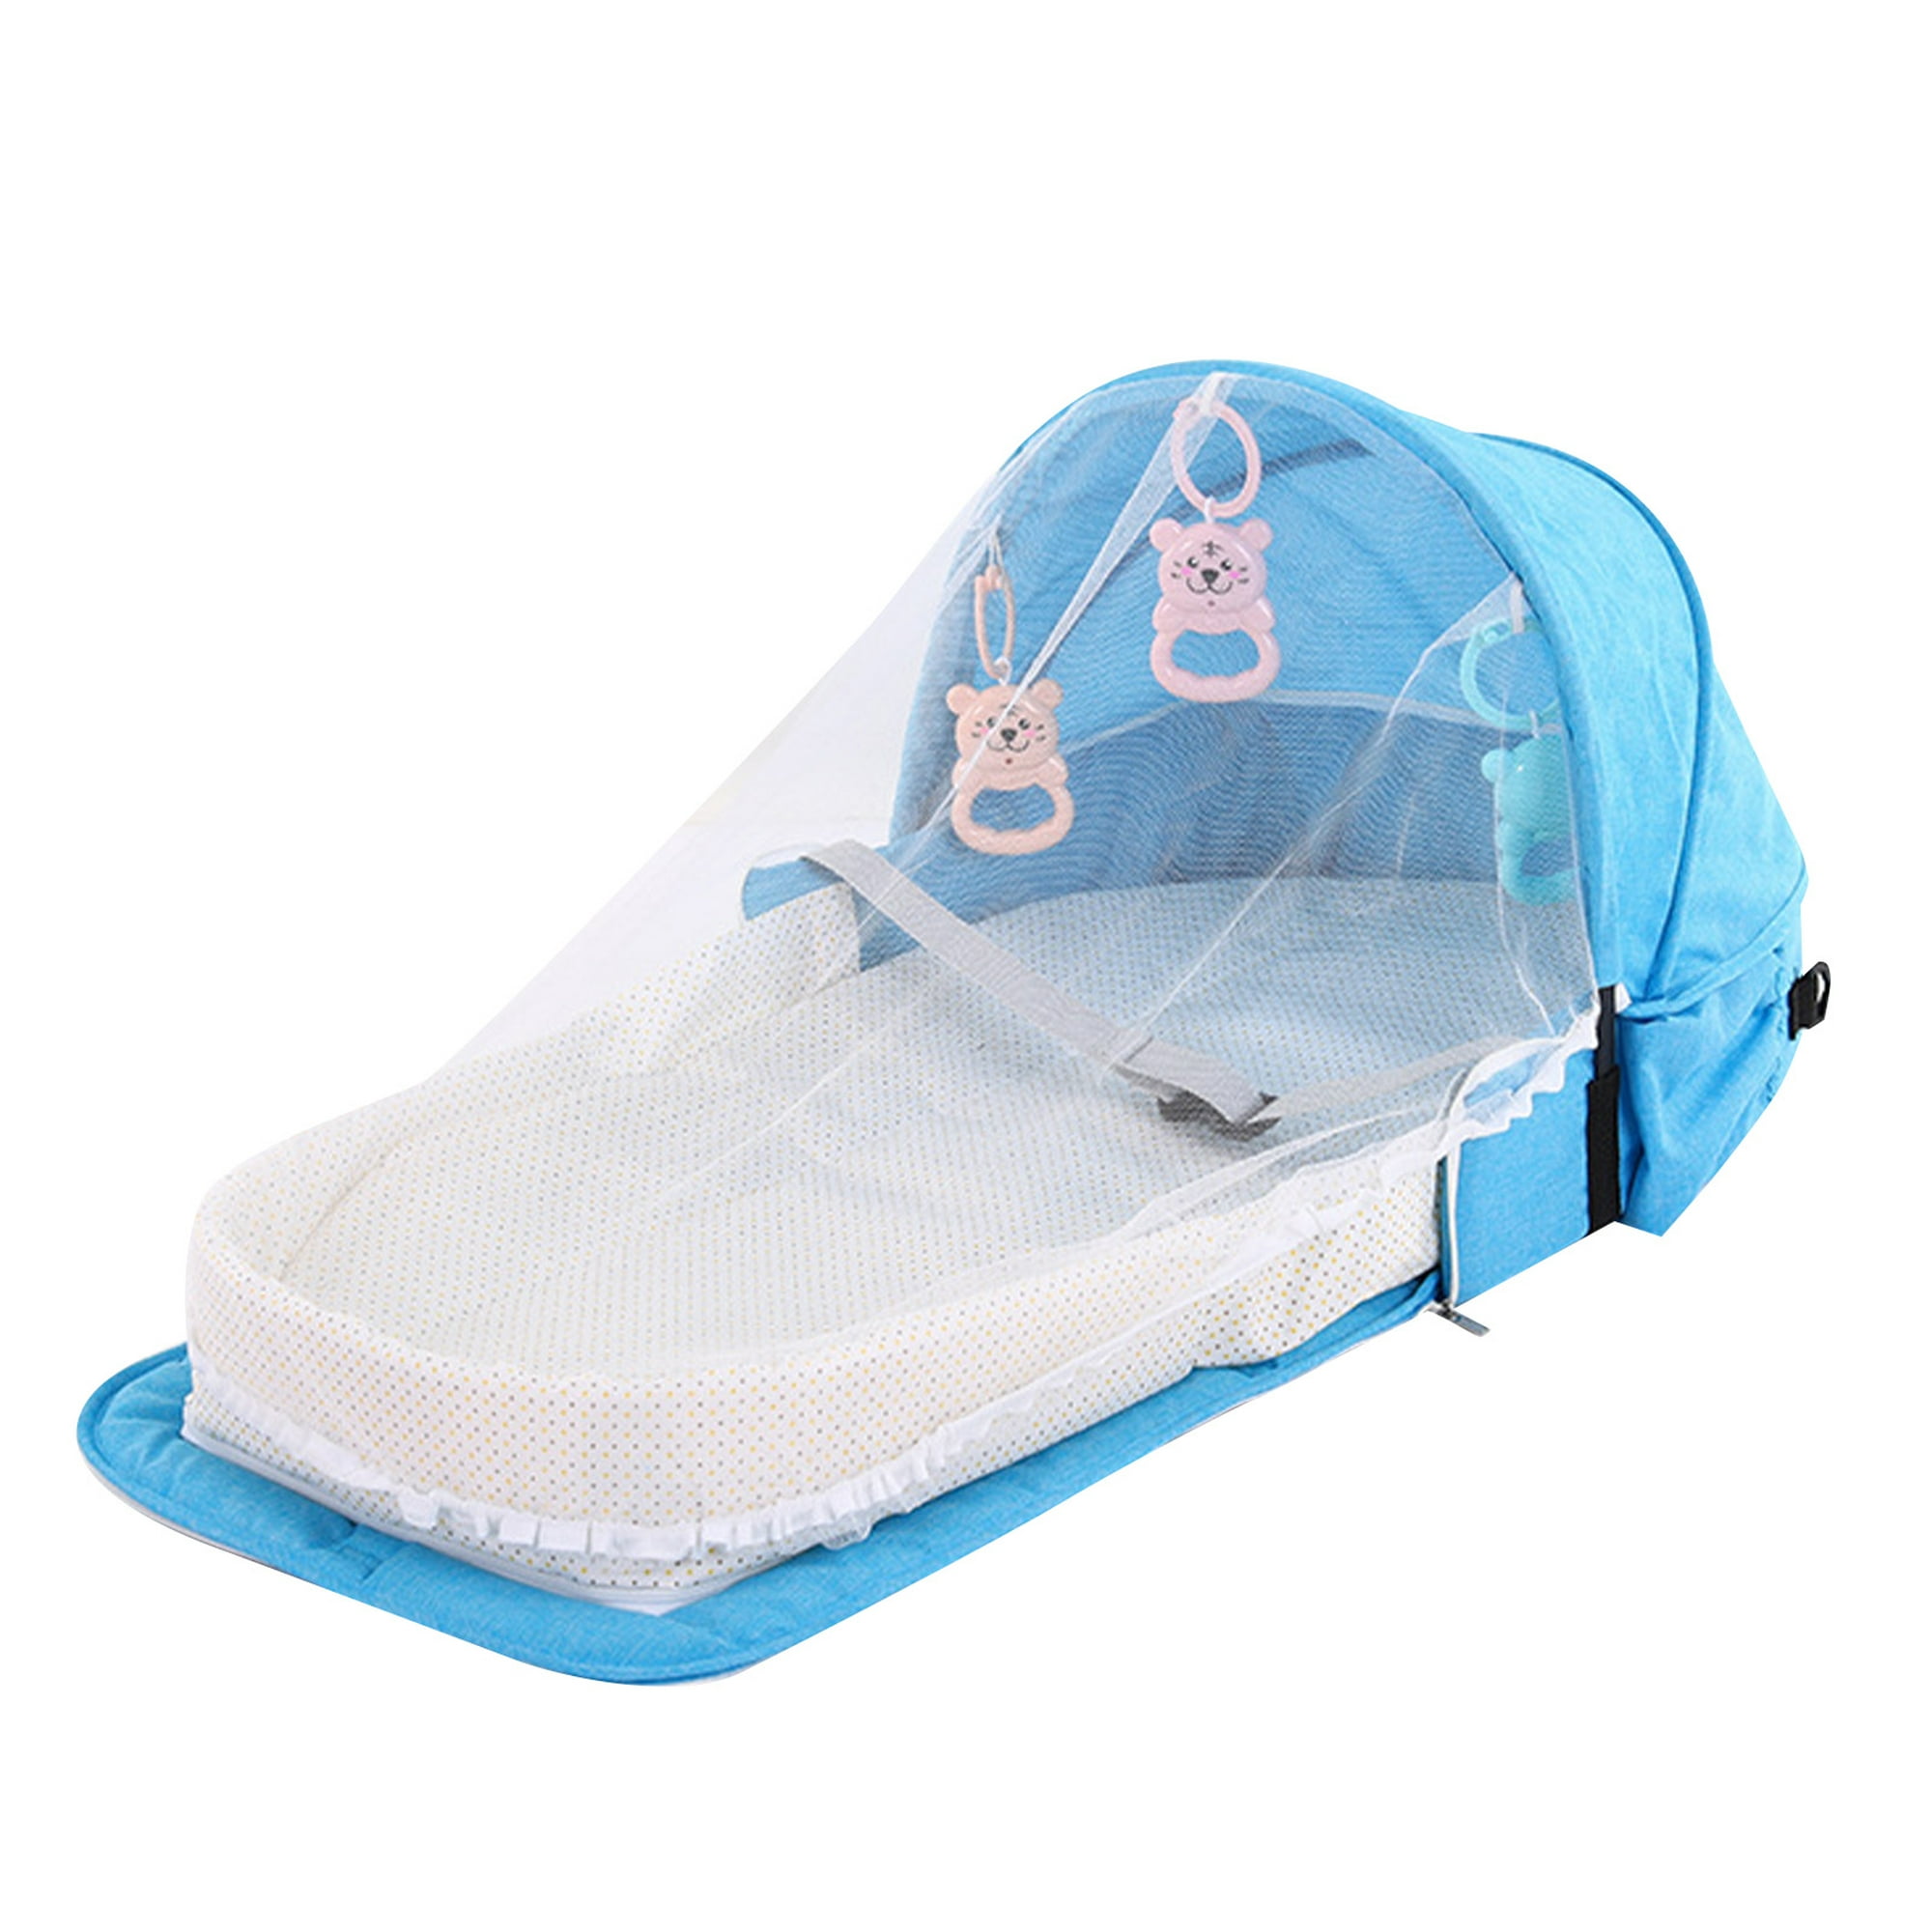 TecTake Parque para bebé cuna infantil de viaje portátil (Azul | No. 402205)